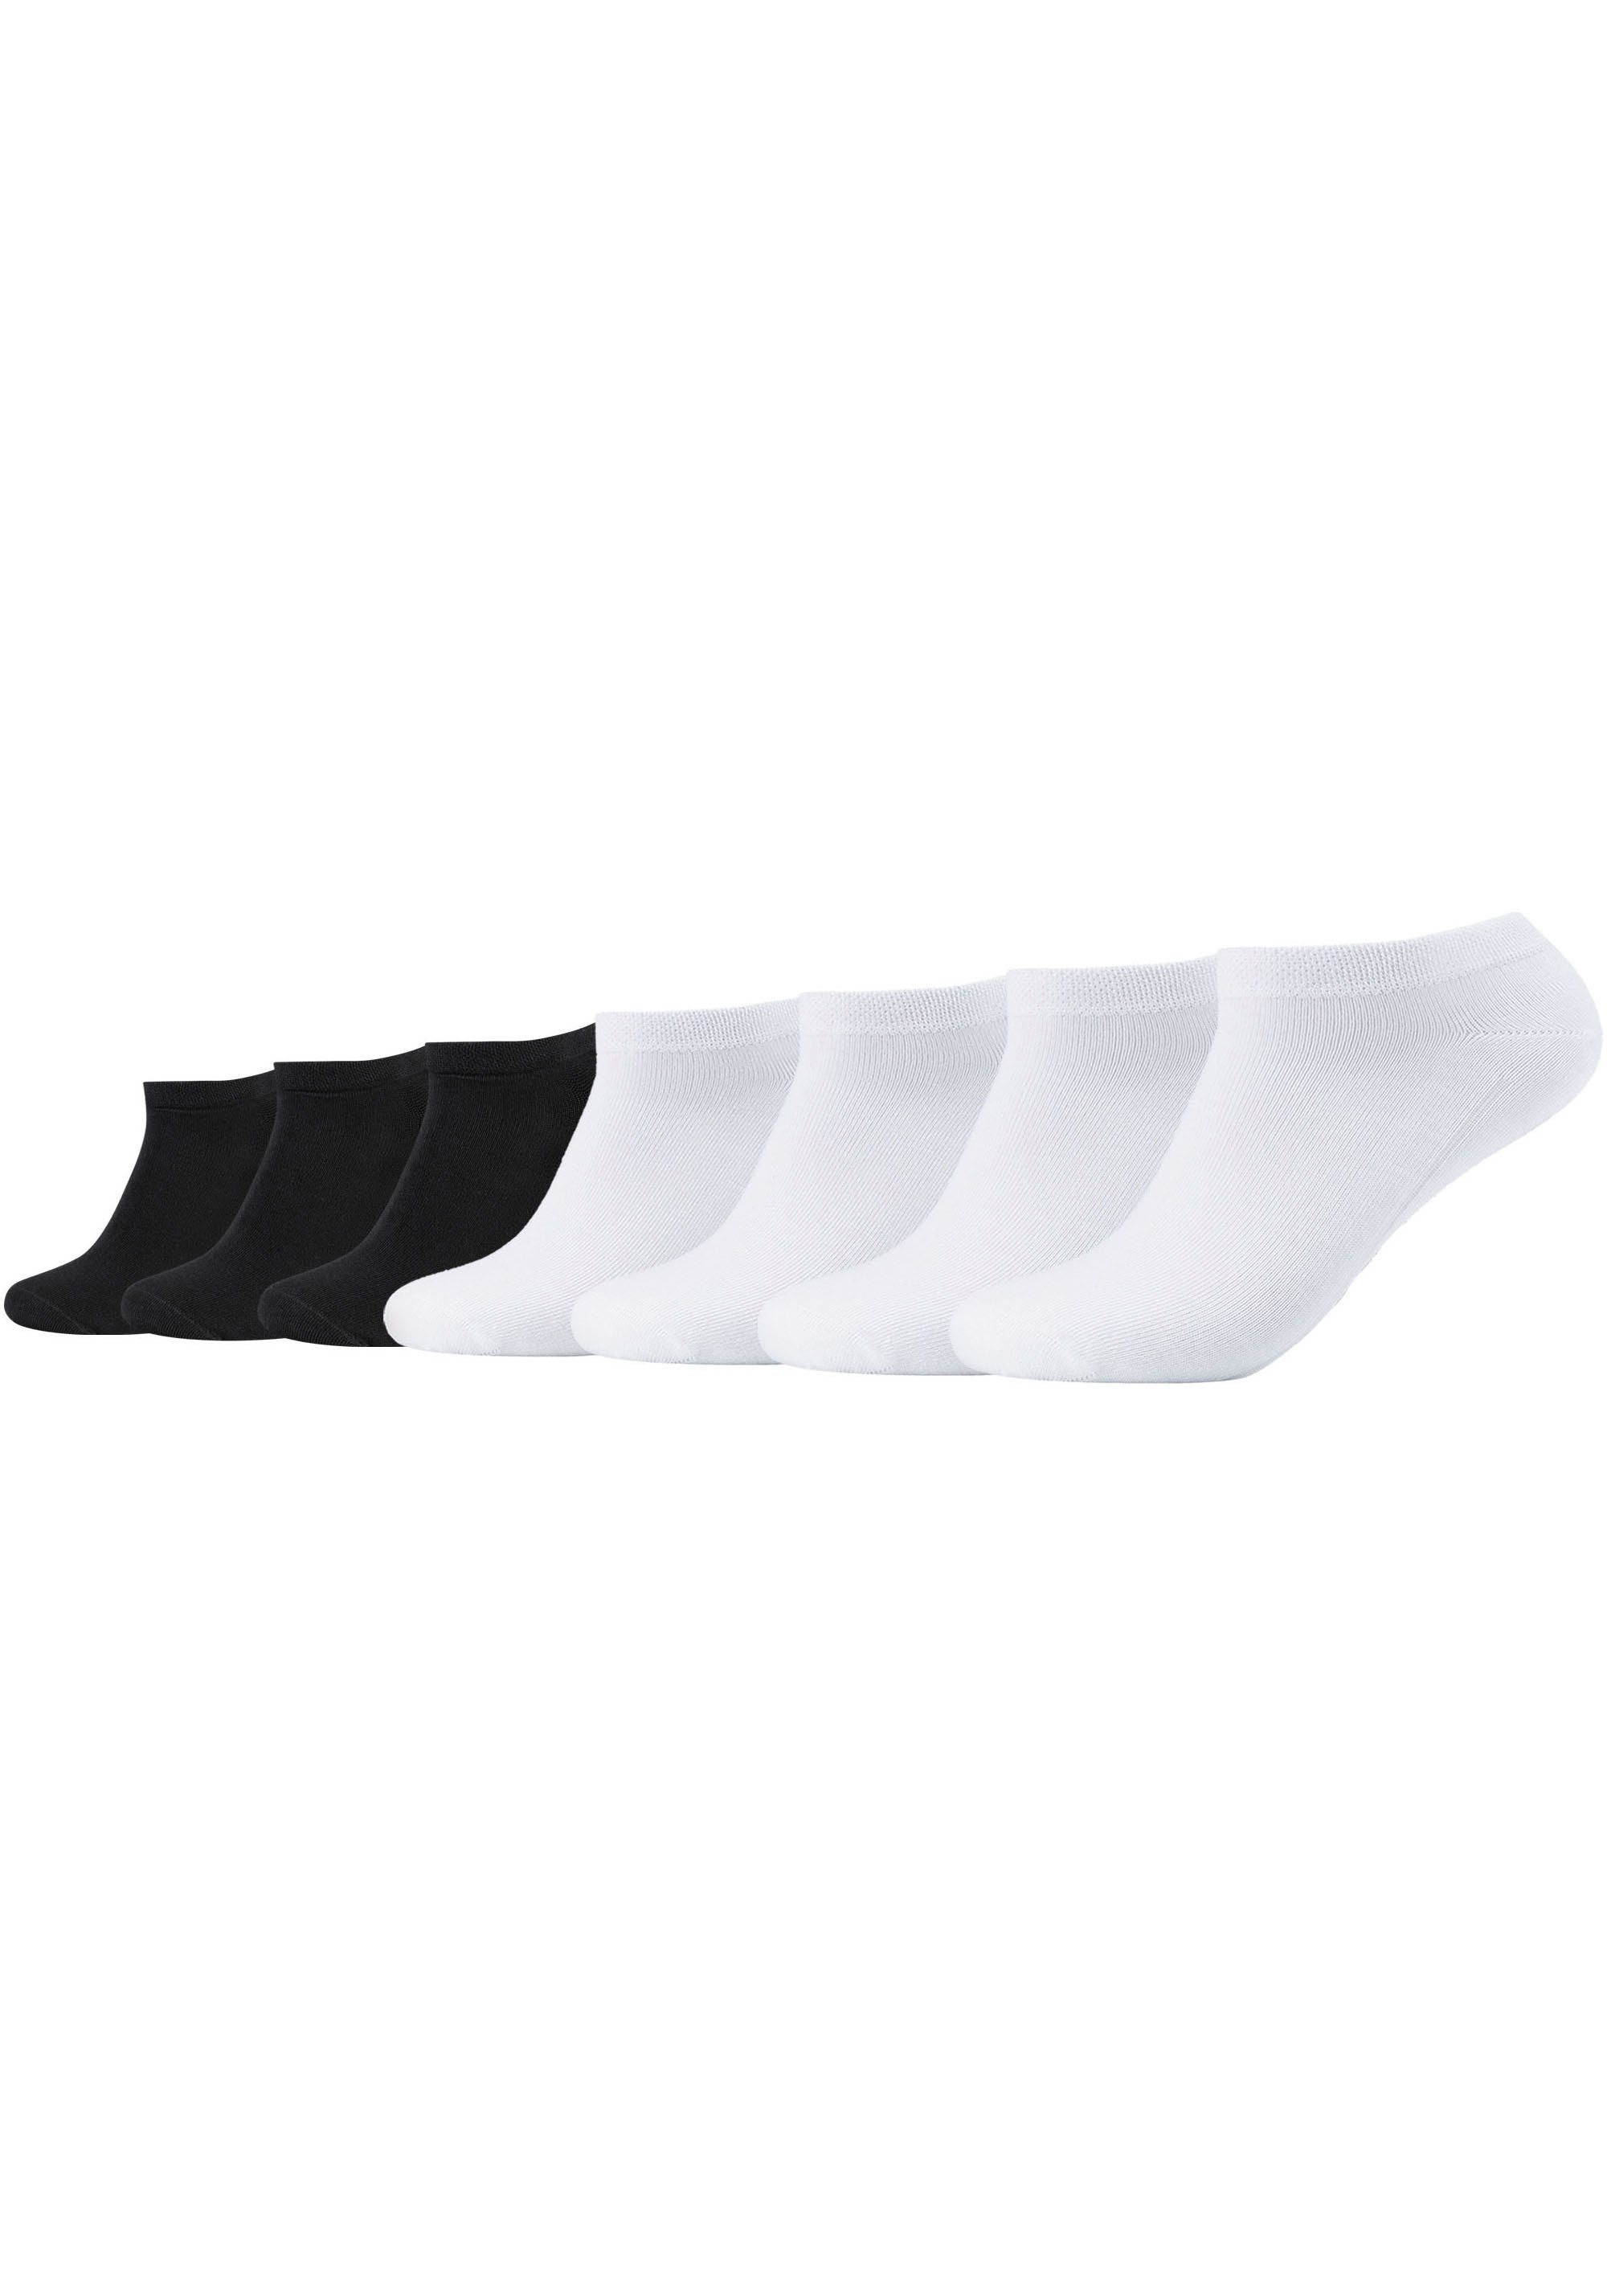 Bund ca-soft Camano Gummidruck ohne Pack 7er Socken (7-Paar)